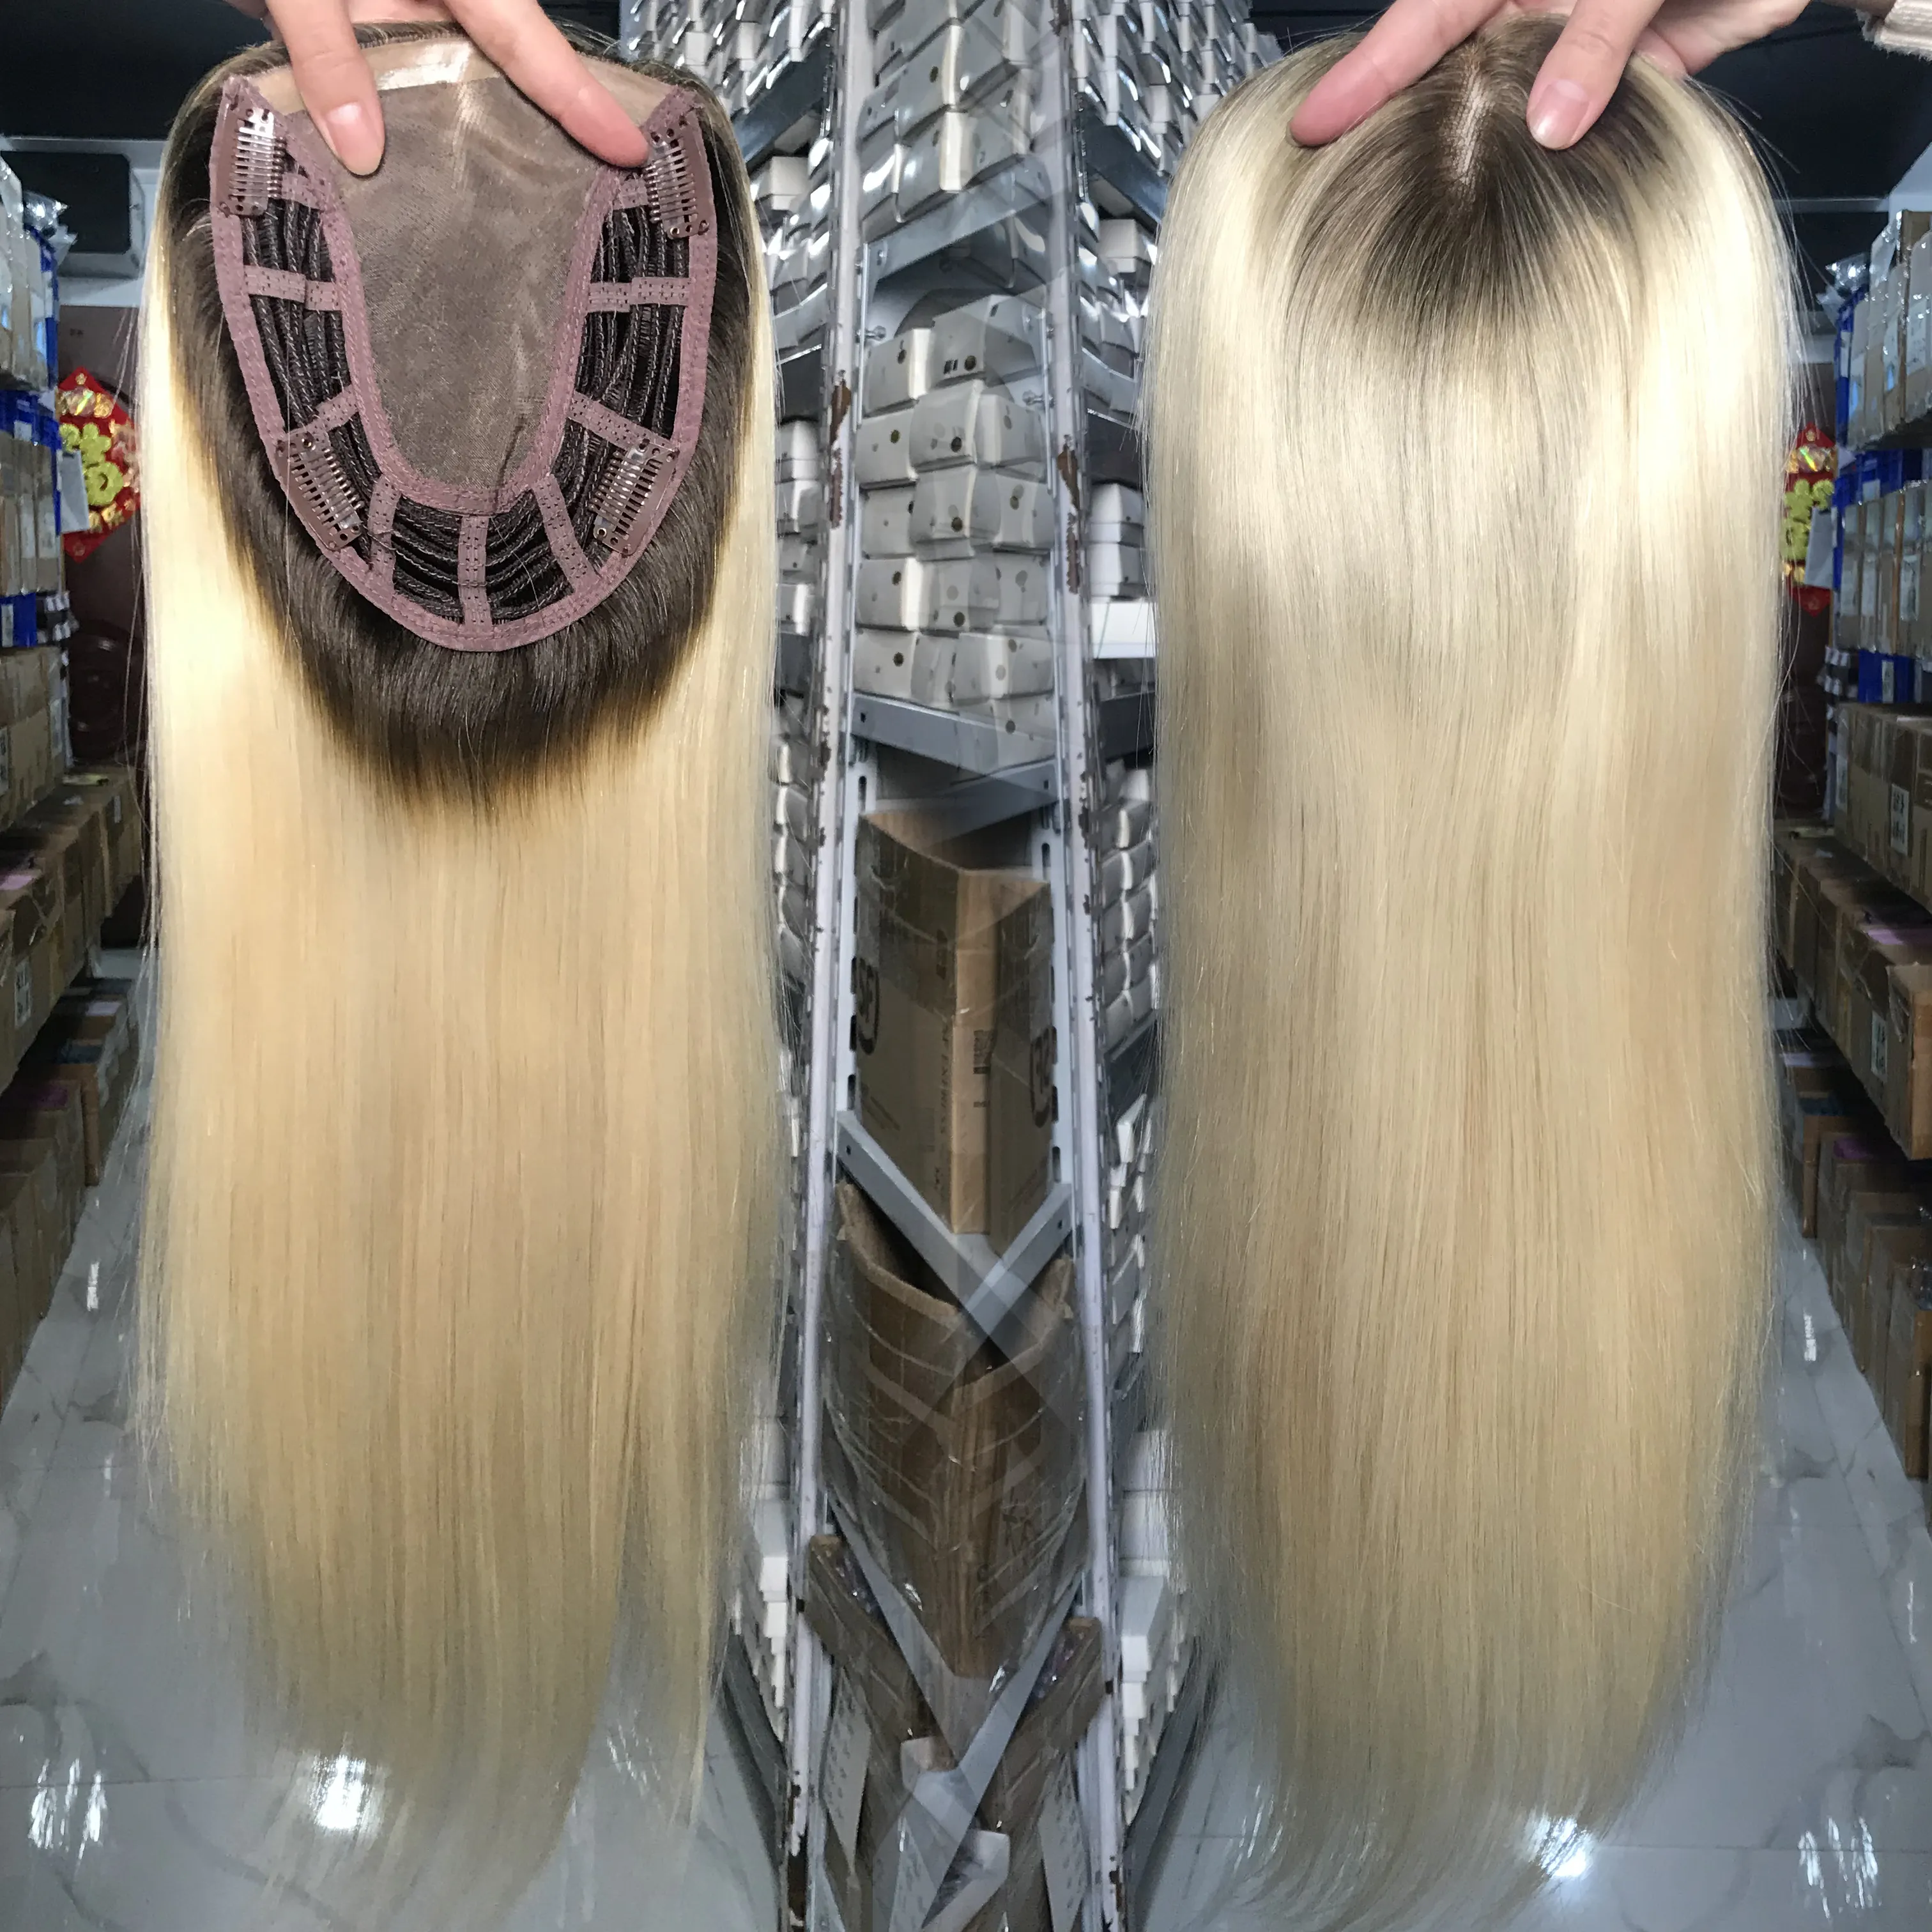 Yeni stok Mono baz makine yapımı atkı klip ile 100% manikür hizalanmış beyaz kadınlar için işlenmemiş insan saçı Topper yedek peruk